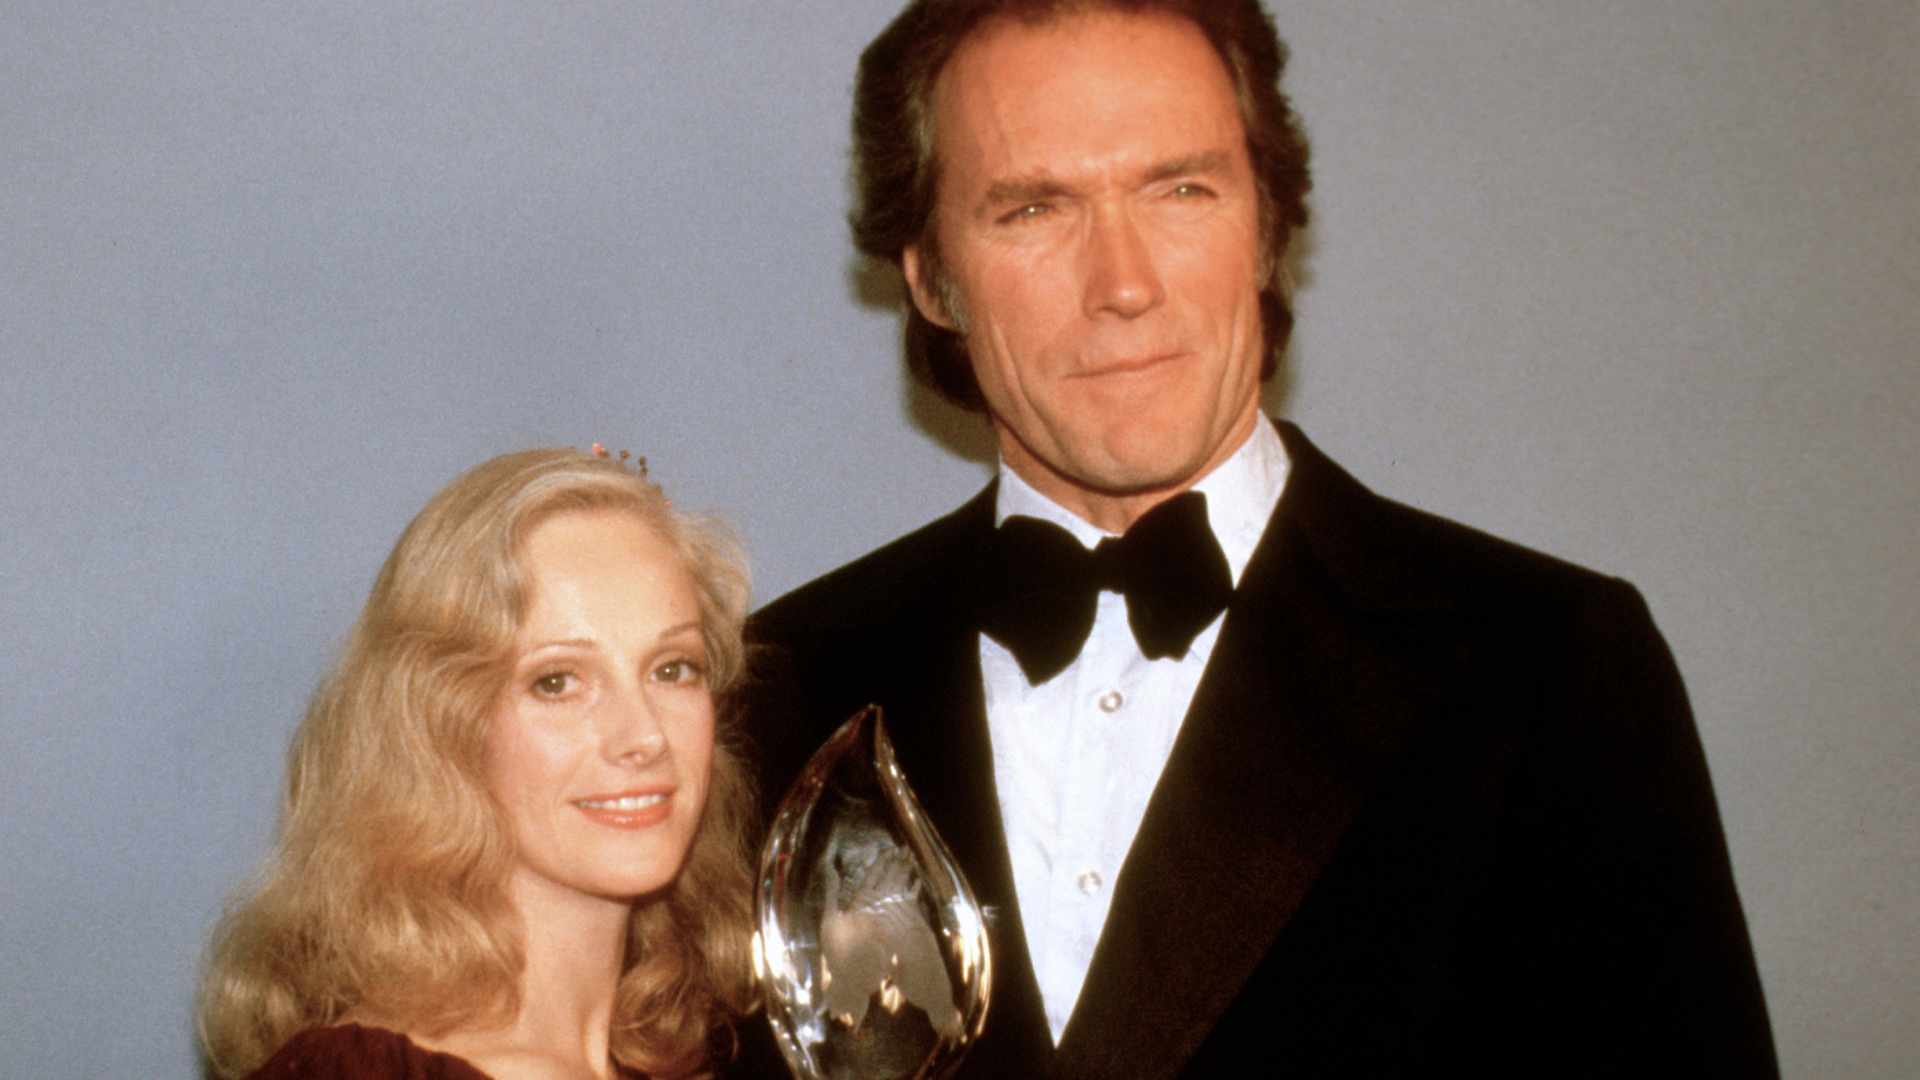 En esta fotografía de archivo del 5 de marzo de 1981, Clint Eastwood posa con su novia Sondra Locke, izquierda, al recibir su premio People's Choice al actor cinematográfico favorito en Los Ángeles. Locke falleció el 3 de noviembre de 2018 a los 74 años (AP Foto, archivo)
